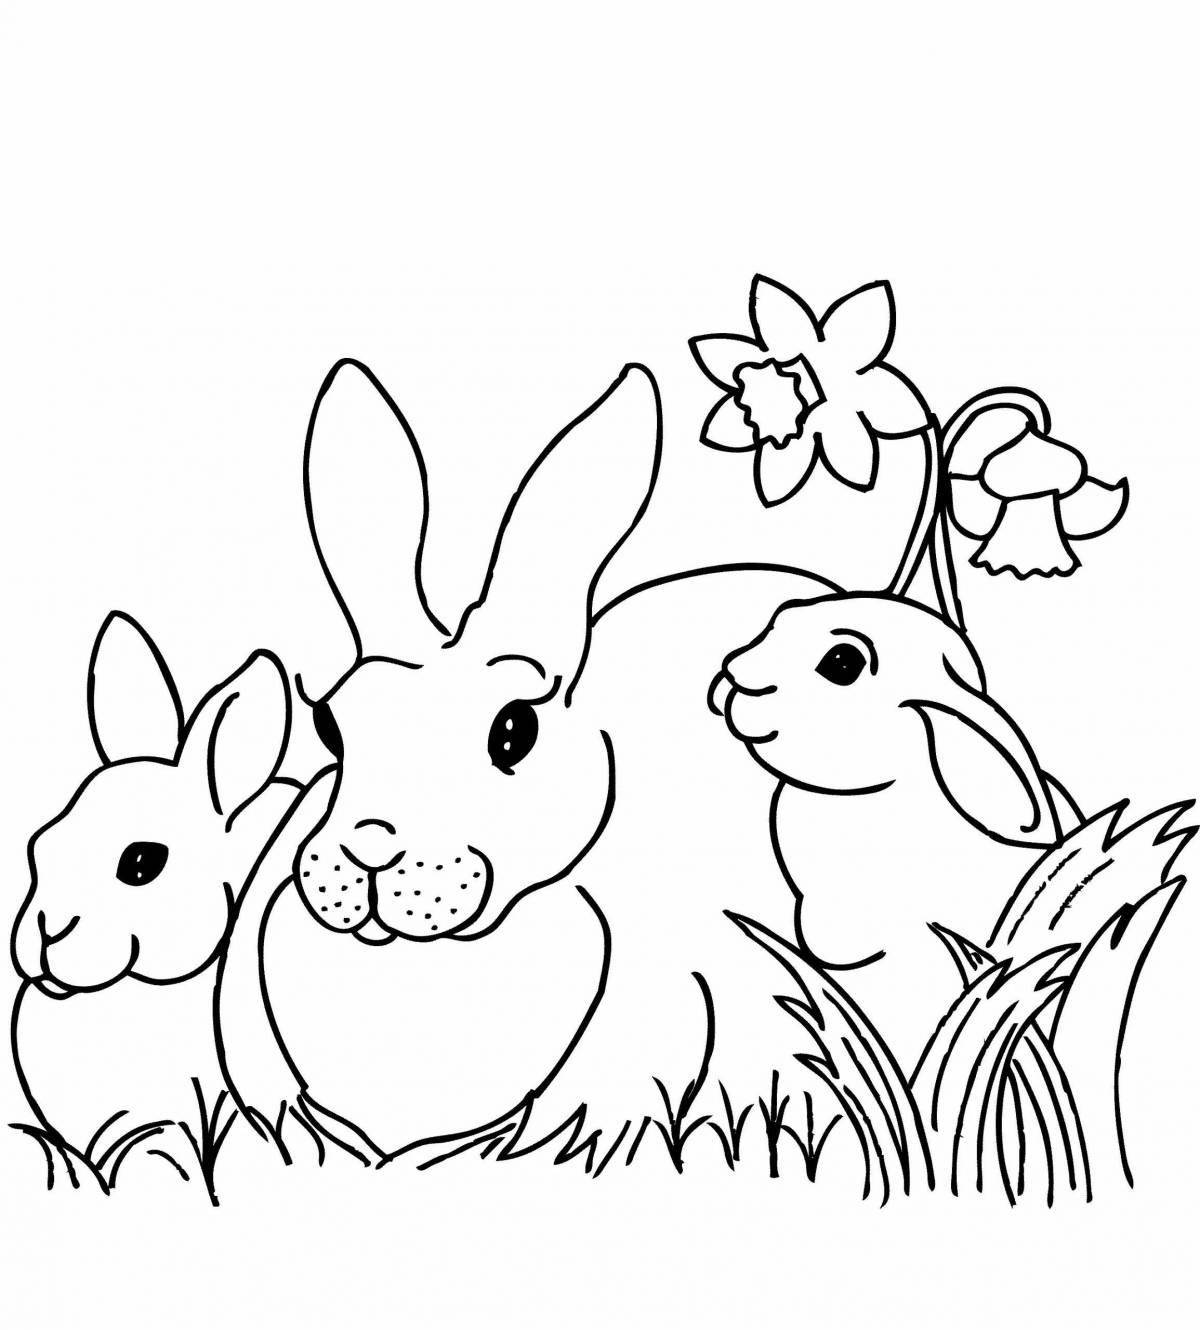 Coloring bouncy bunny bunny